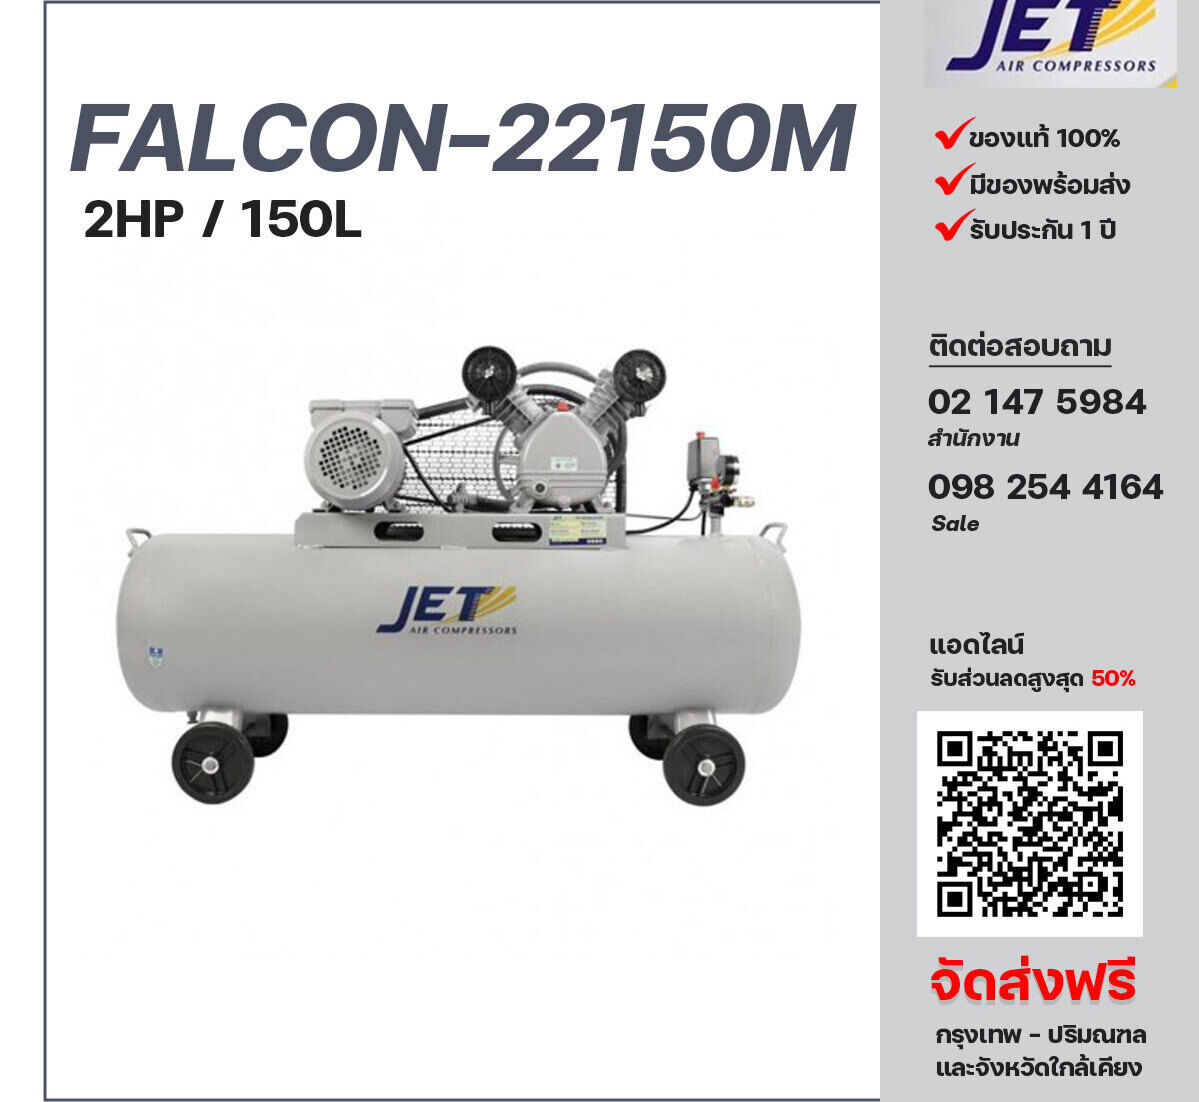 ปั๊มลมสายพาน JET ขนาด 2 แรงม้า รุ่น FALCON-22150M ไฟฟ้า 220V มอเตอร์ 3 แรงม้า ไฟฟ้า 220 โวลต์ ถังเก็บลมขนาด 150 ลิตร  รับประกัน 1 ปี ตามเงื่อนไขบริษัทผู้ผลิต